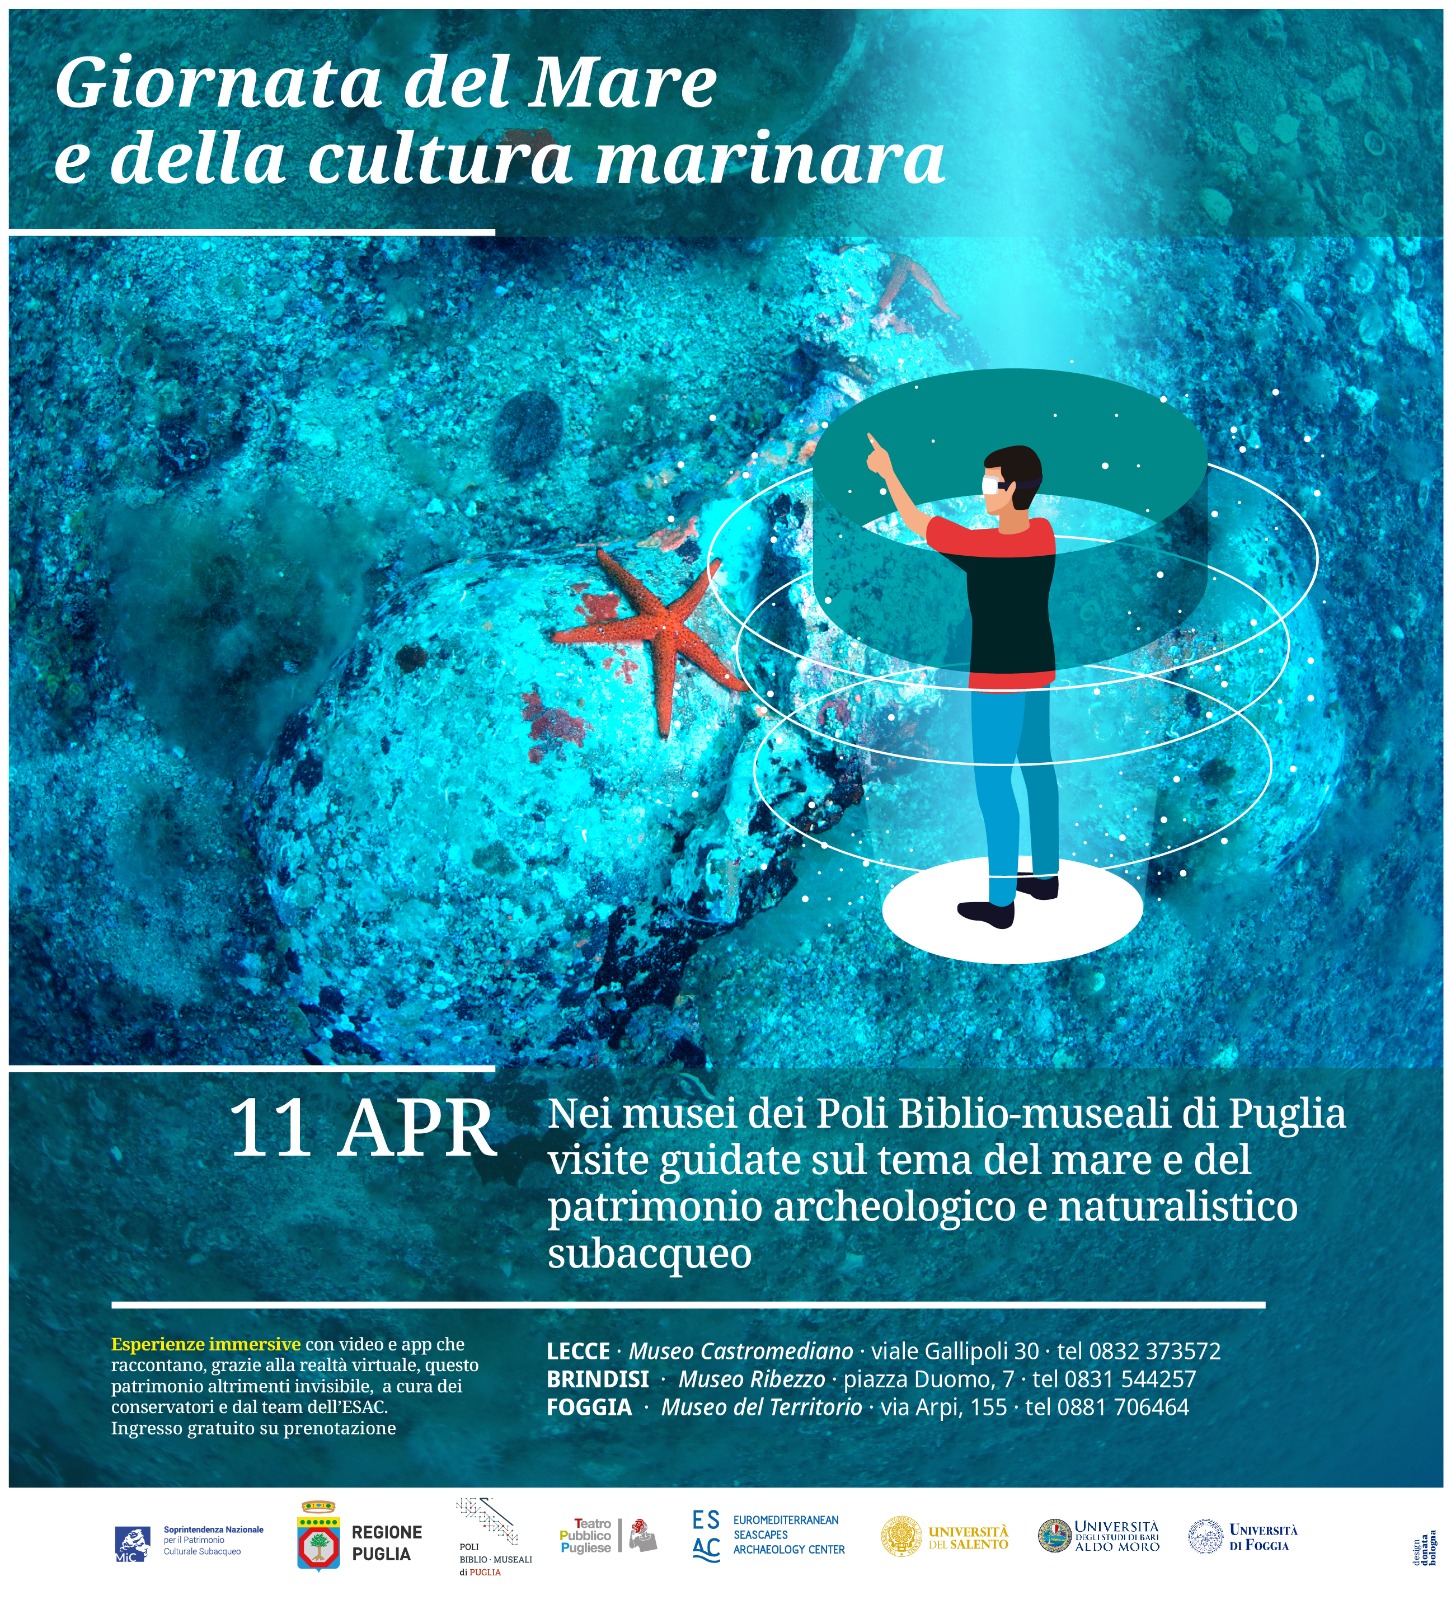 Galleria Partono da martedì 11 aprile le iniziative per la celebrazione della risorsa mare in tutta la Puglia costiera - Diapositiva 1 di 1